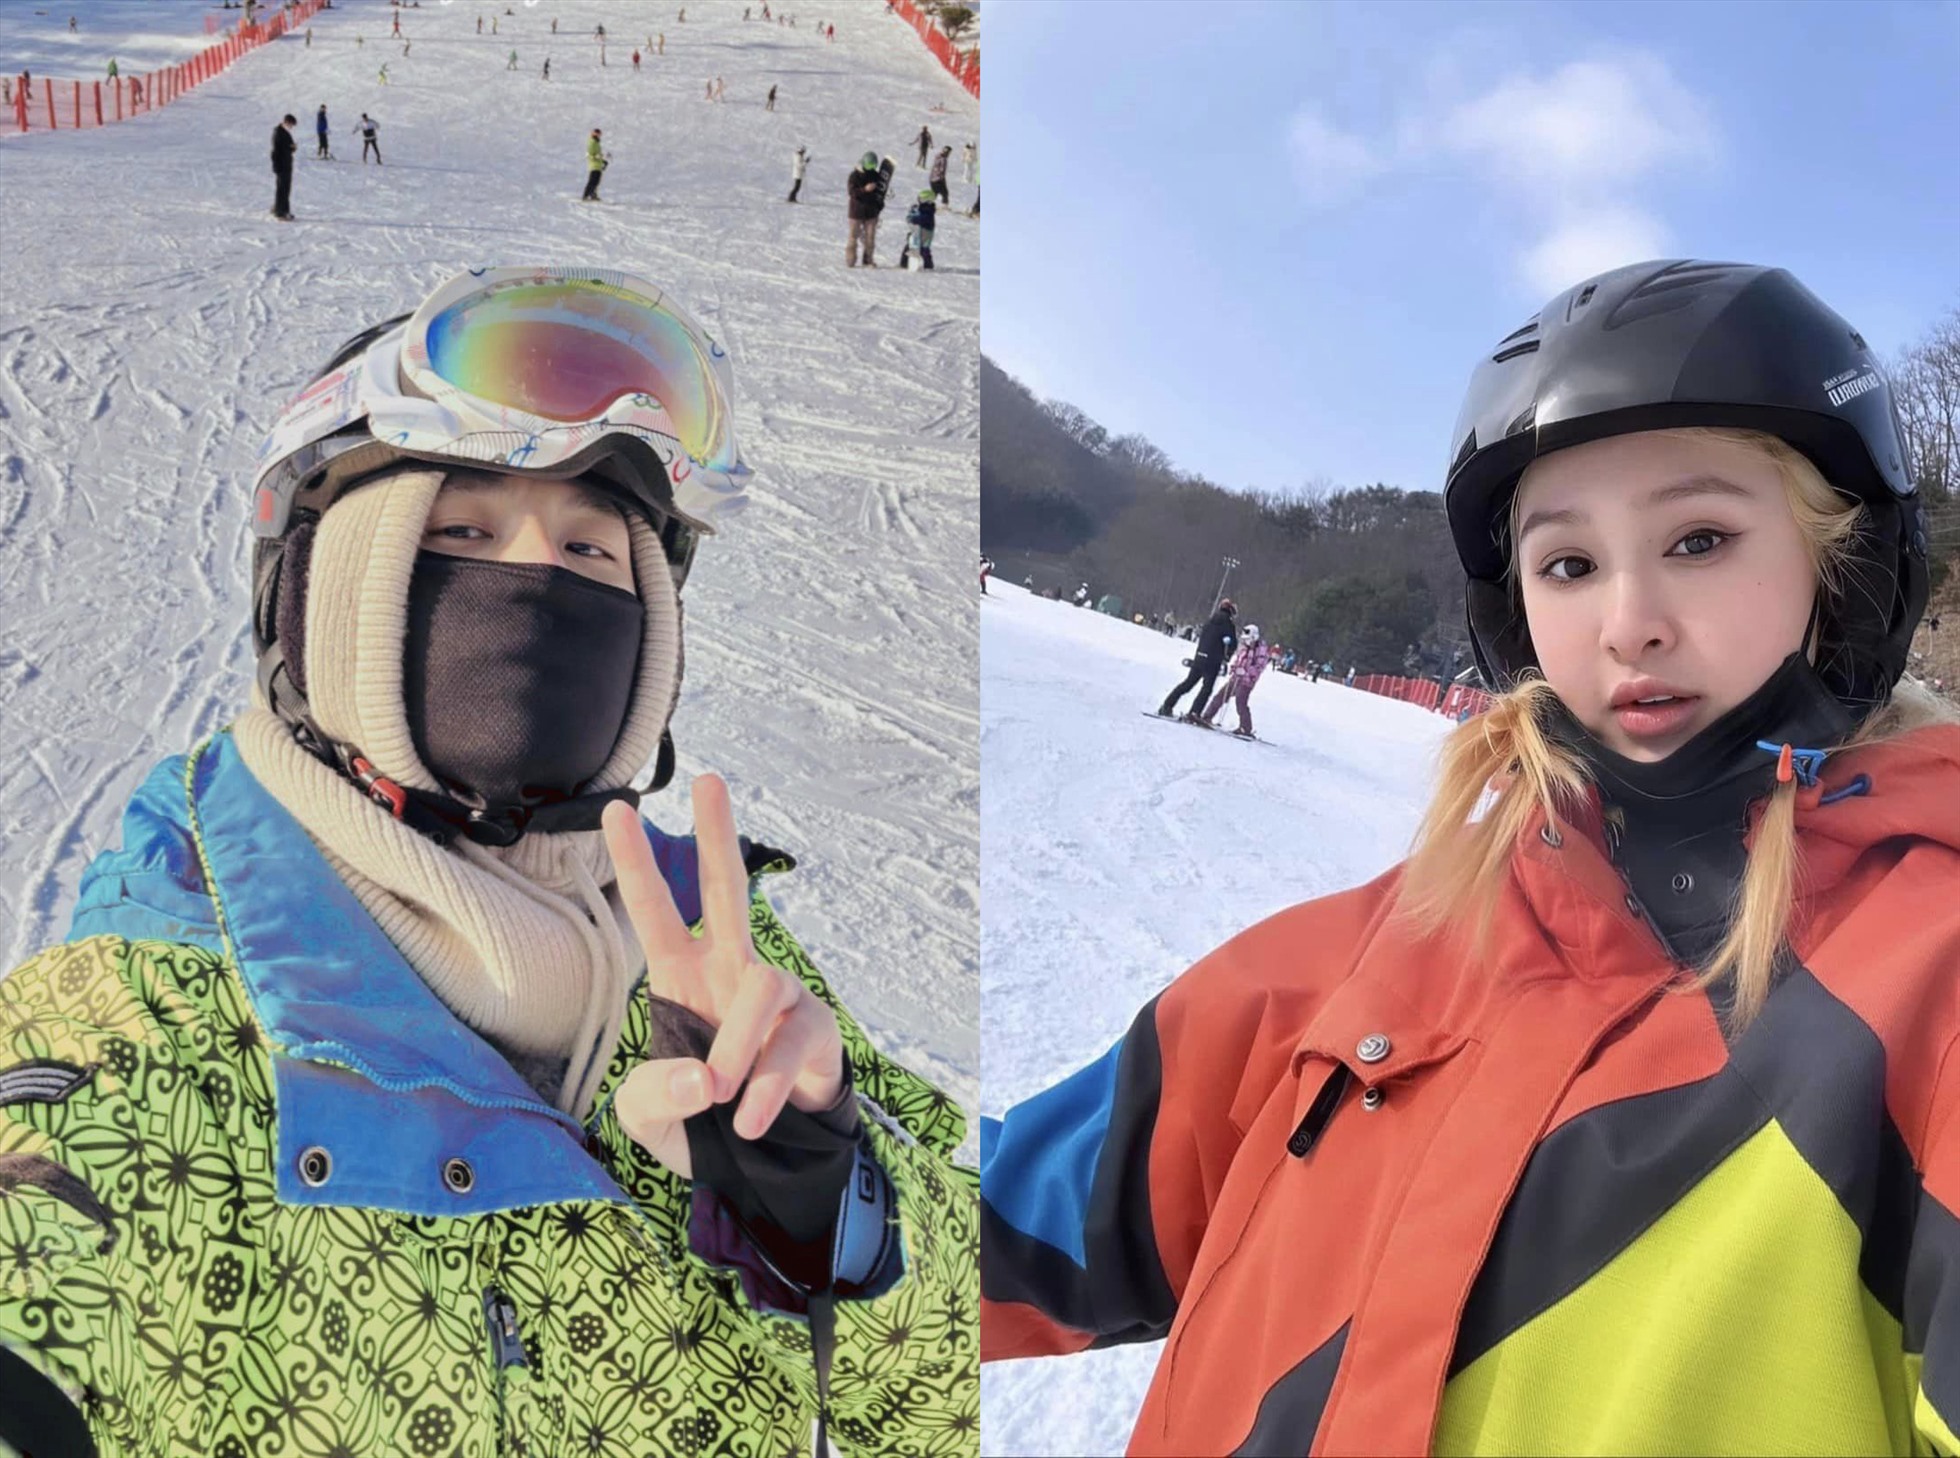 Trịnh Thăng Bình được cho là đi trượt tuyết với Hiền Hồ tại Hàn Quốc. Ảnh: Nhân vật cung cấp